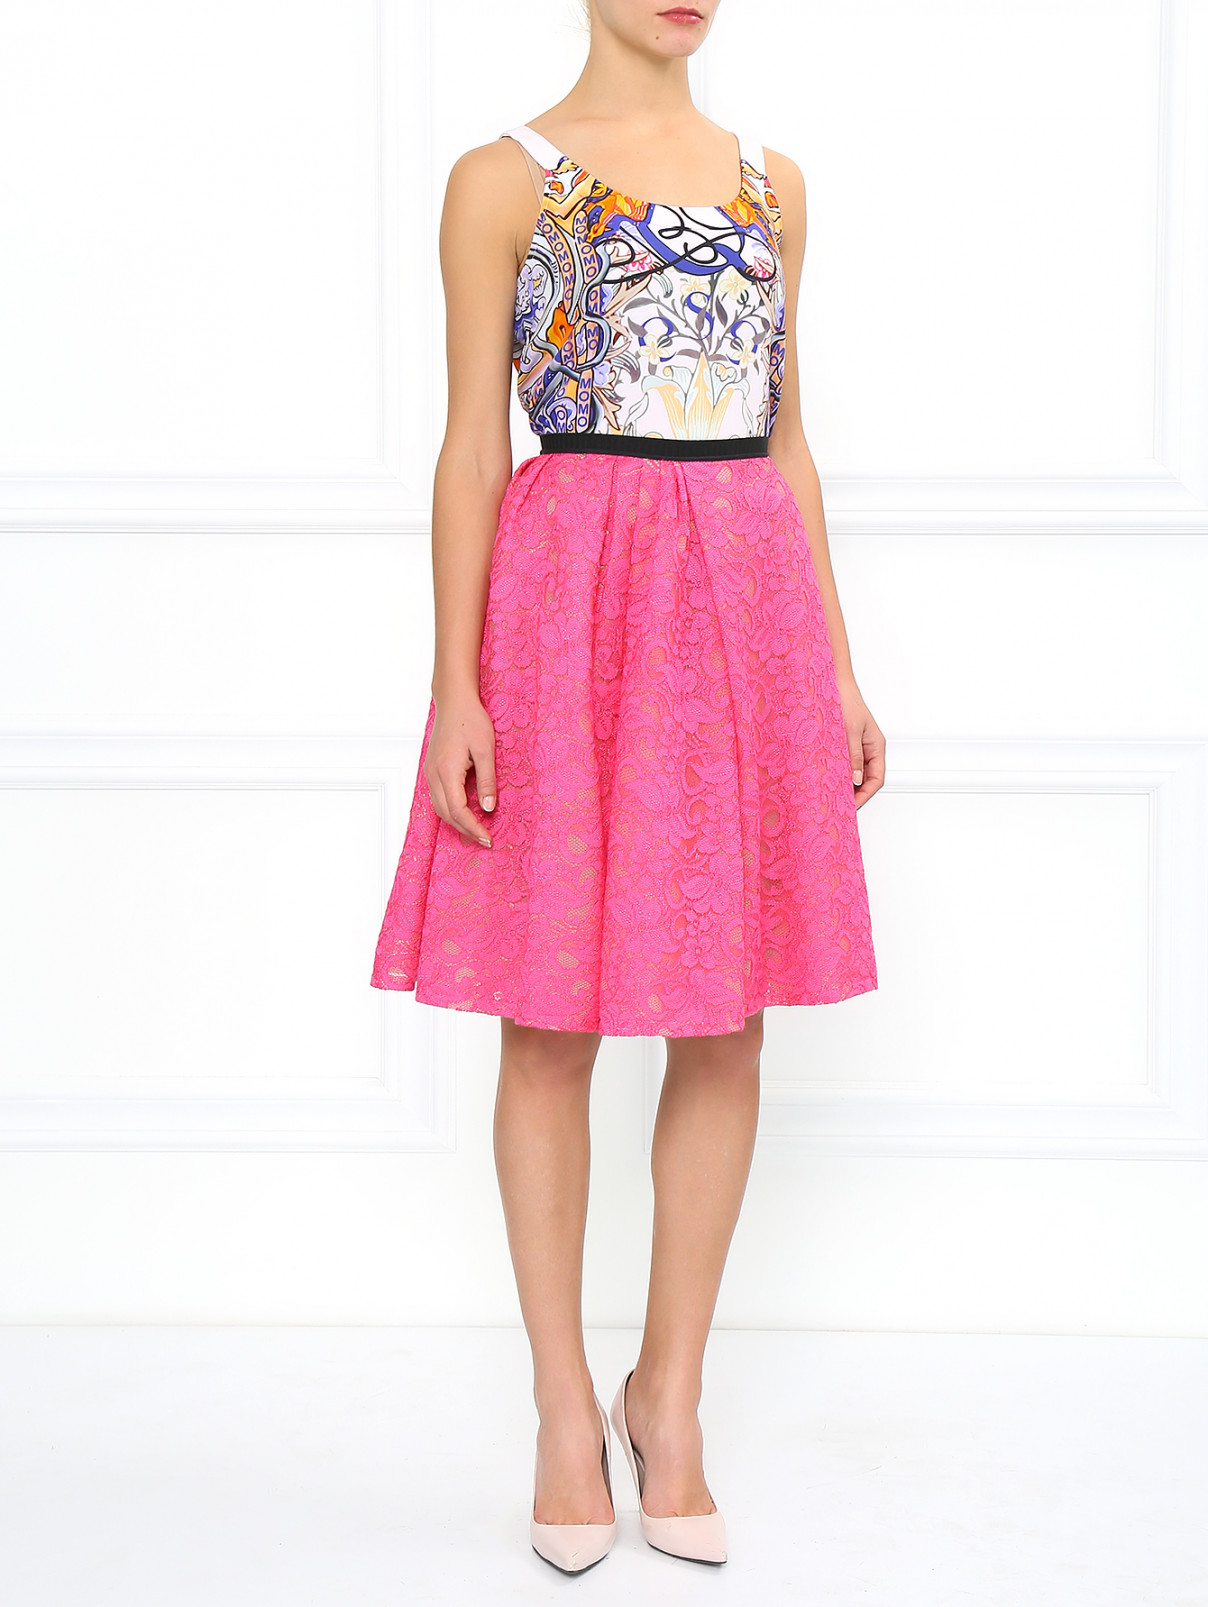 Кружевная юбка-солнце Antonio Marras  –  Модель Общий вид  – Цвет:  Розовый